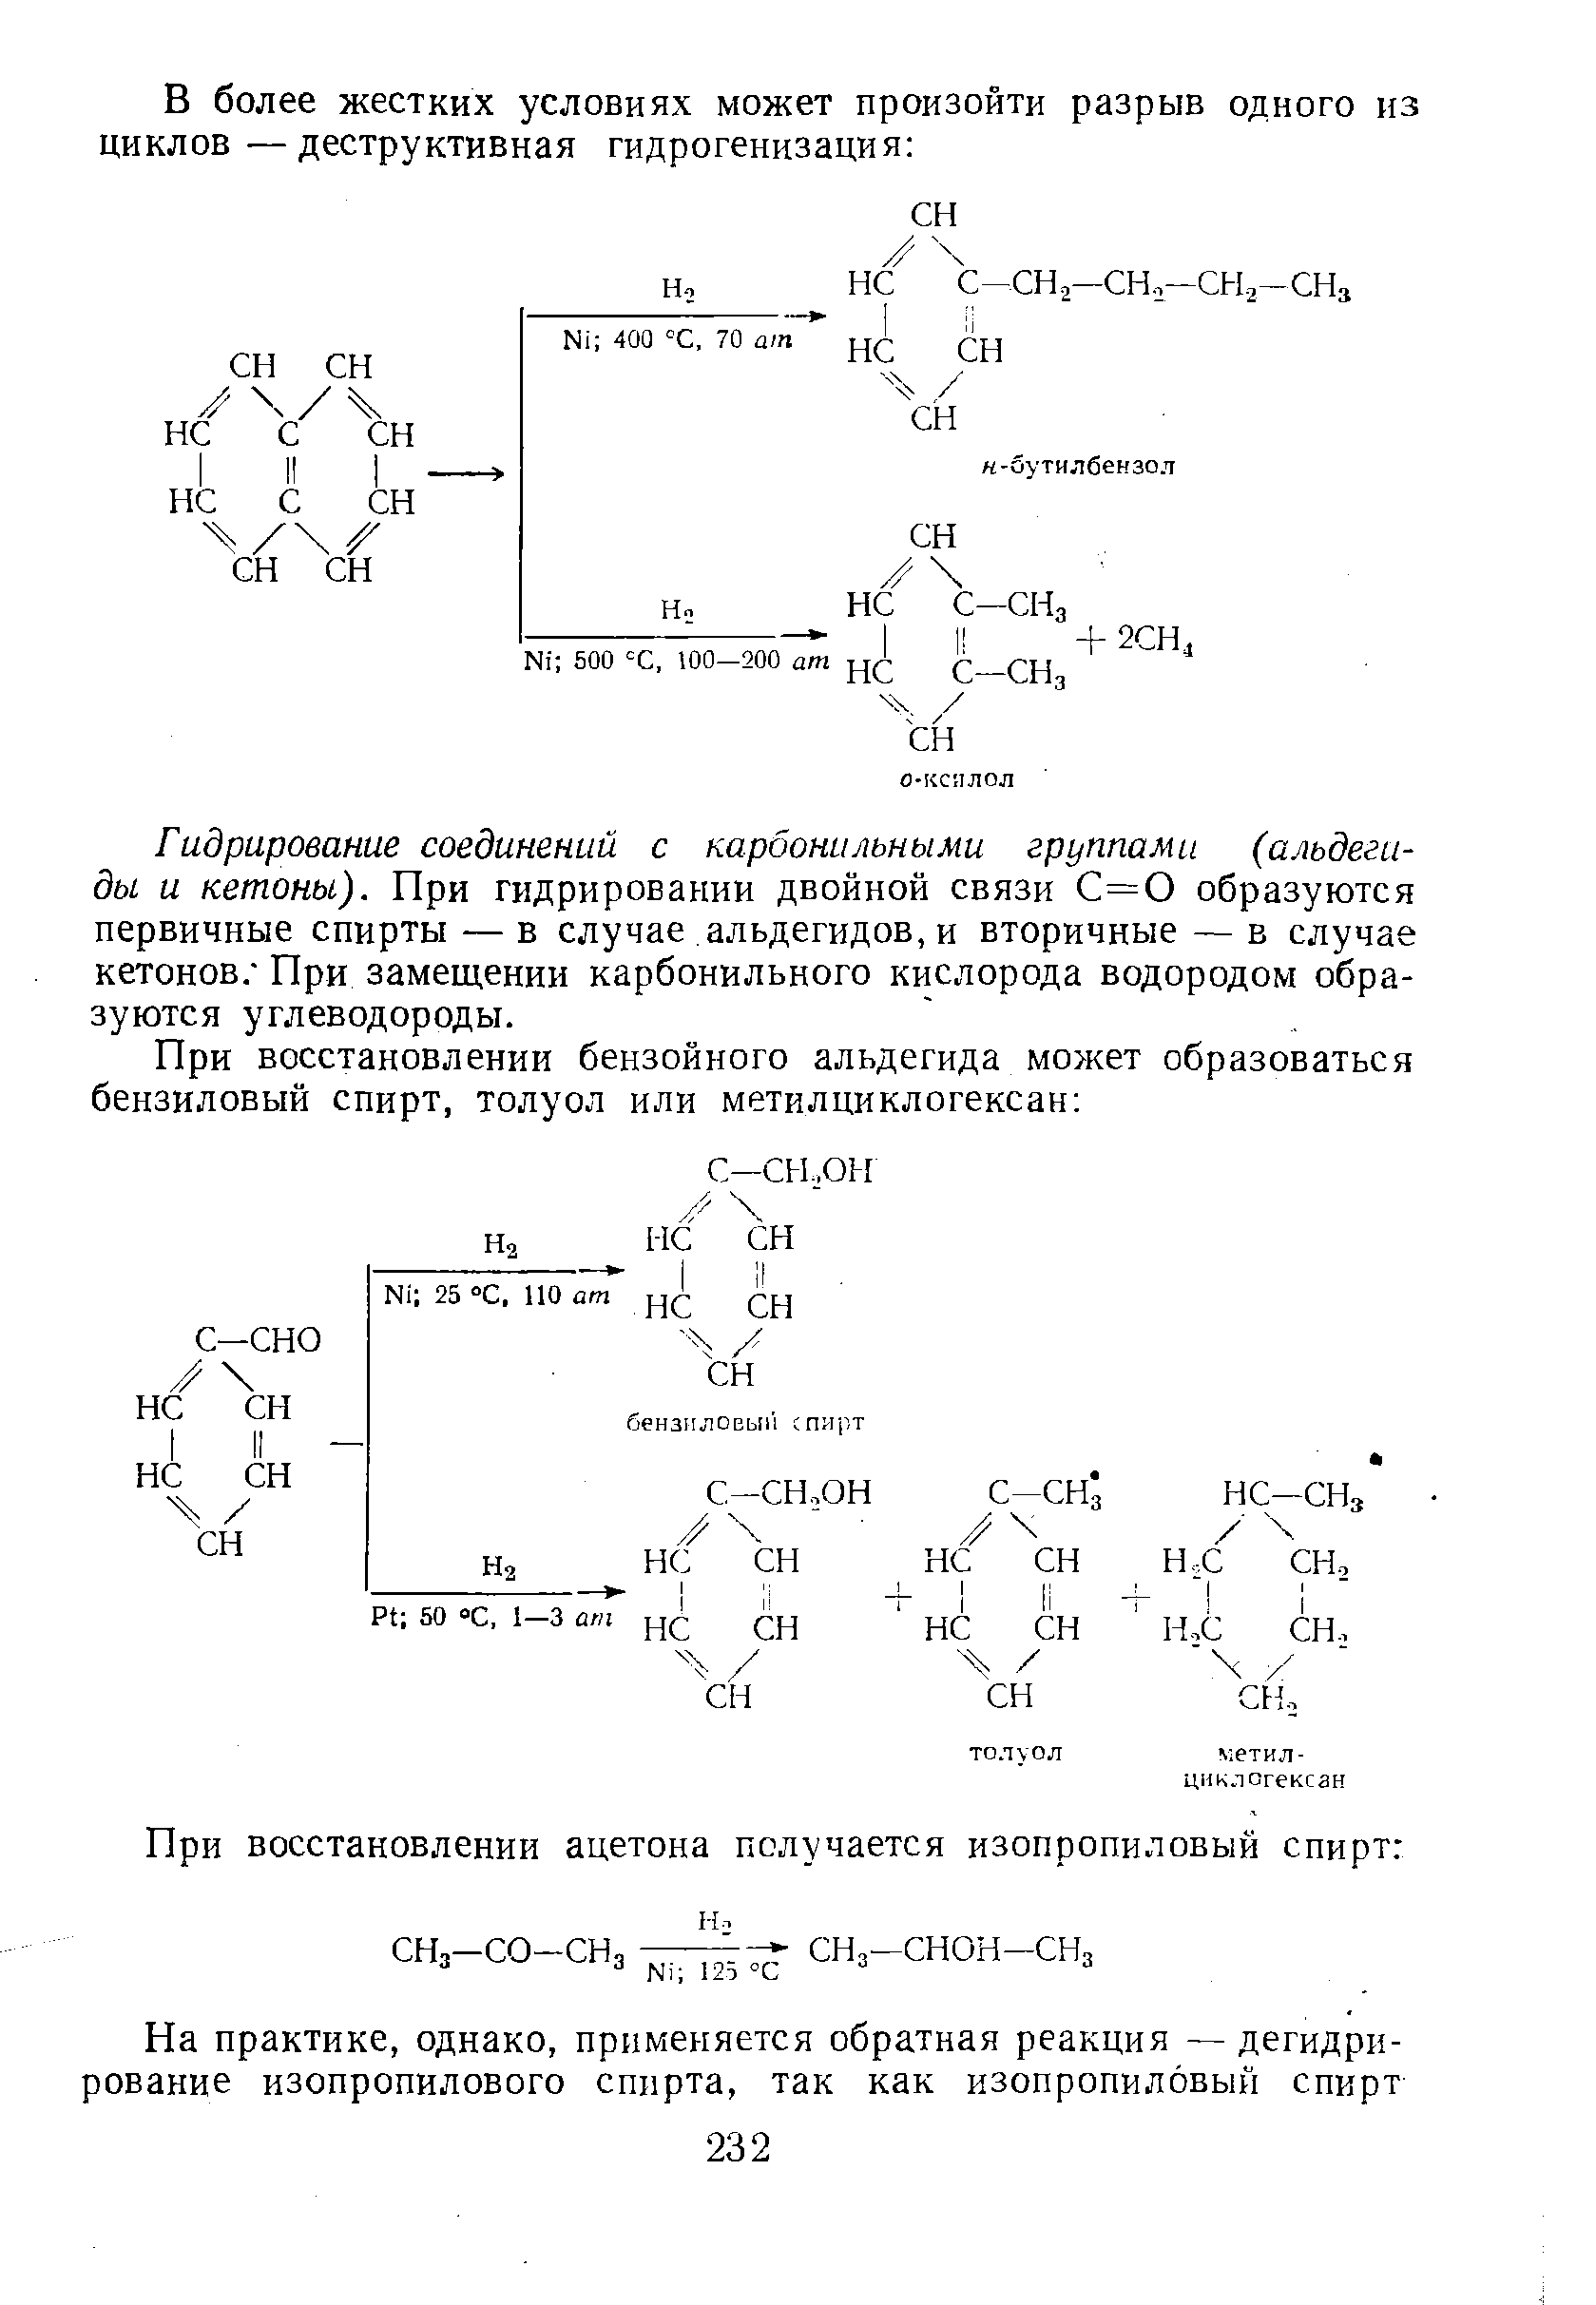 Гидрирование соединений с карбонильными группами (альдегиды и кетоны). При гидрировании двойной связи С=0 образуются первичные спирты — в случае альдегидов, и вторичные — в случае кетонов/ При замещении карбонильного кислорода водородом образуются углеводороды.